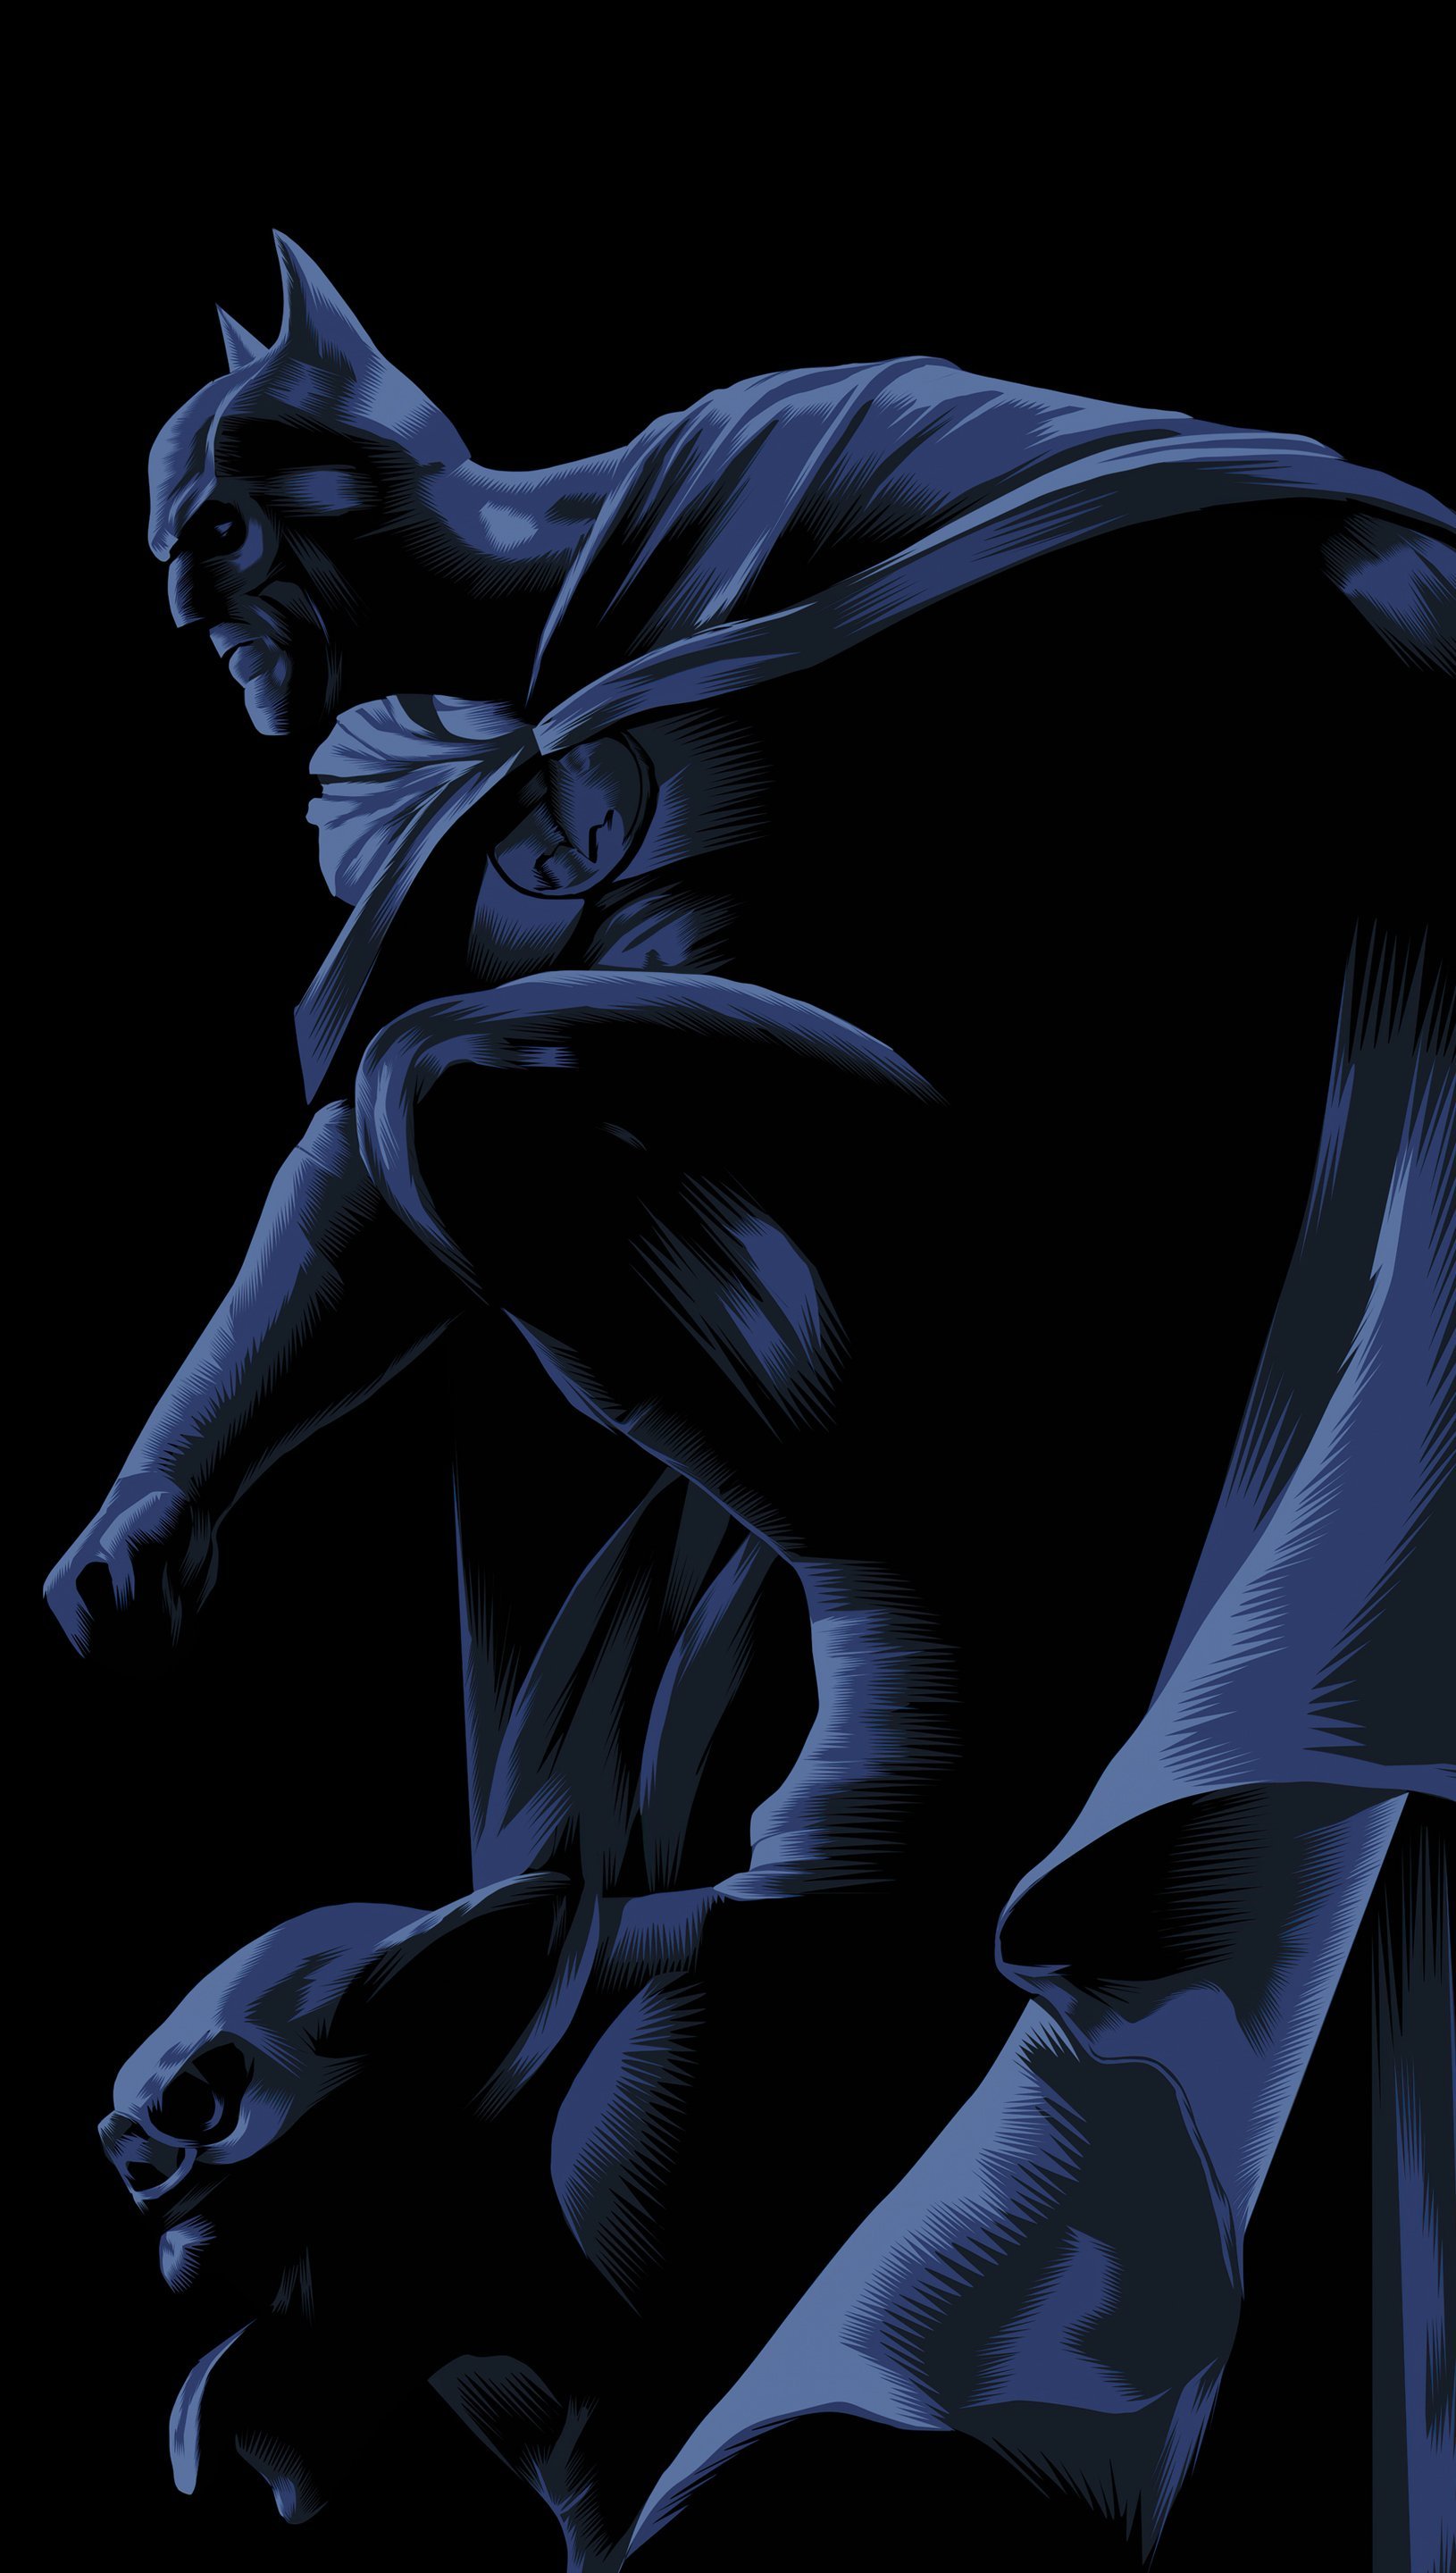 Batman Dark Knight Illustration Wallpaper 5k Ultra HD ID:8158